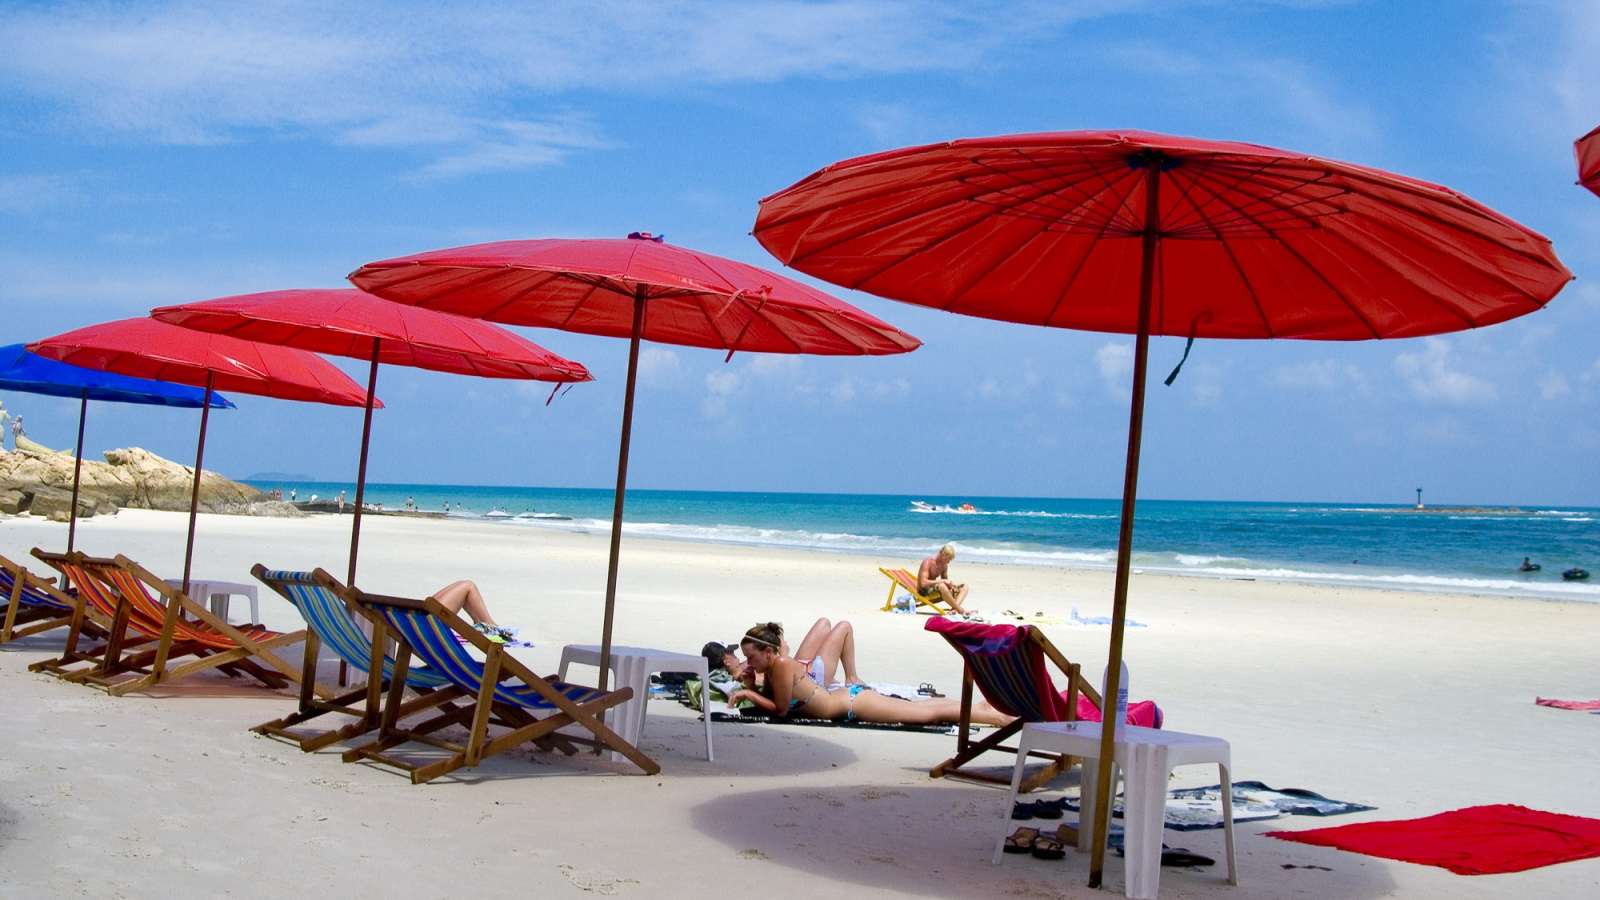 Пляж на острове Самет, Таиланд